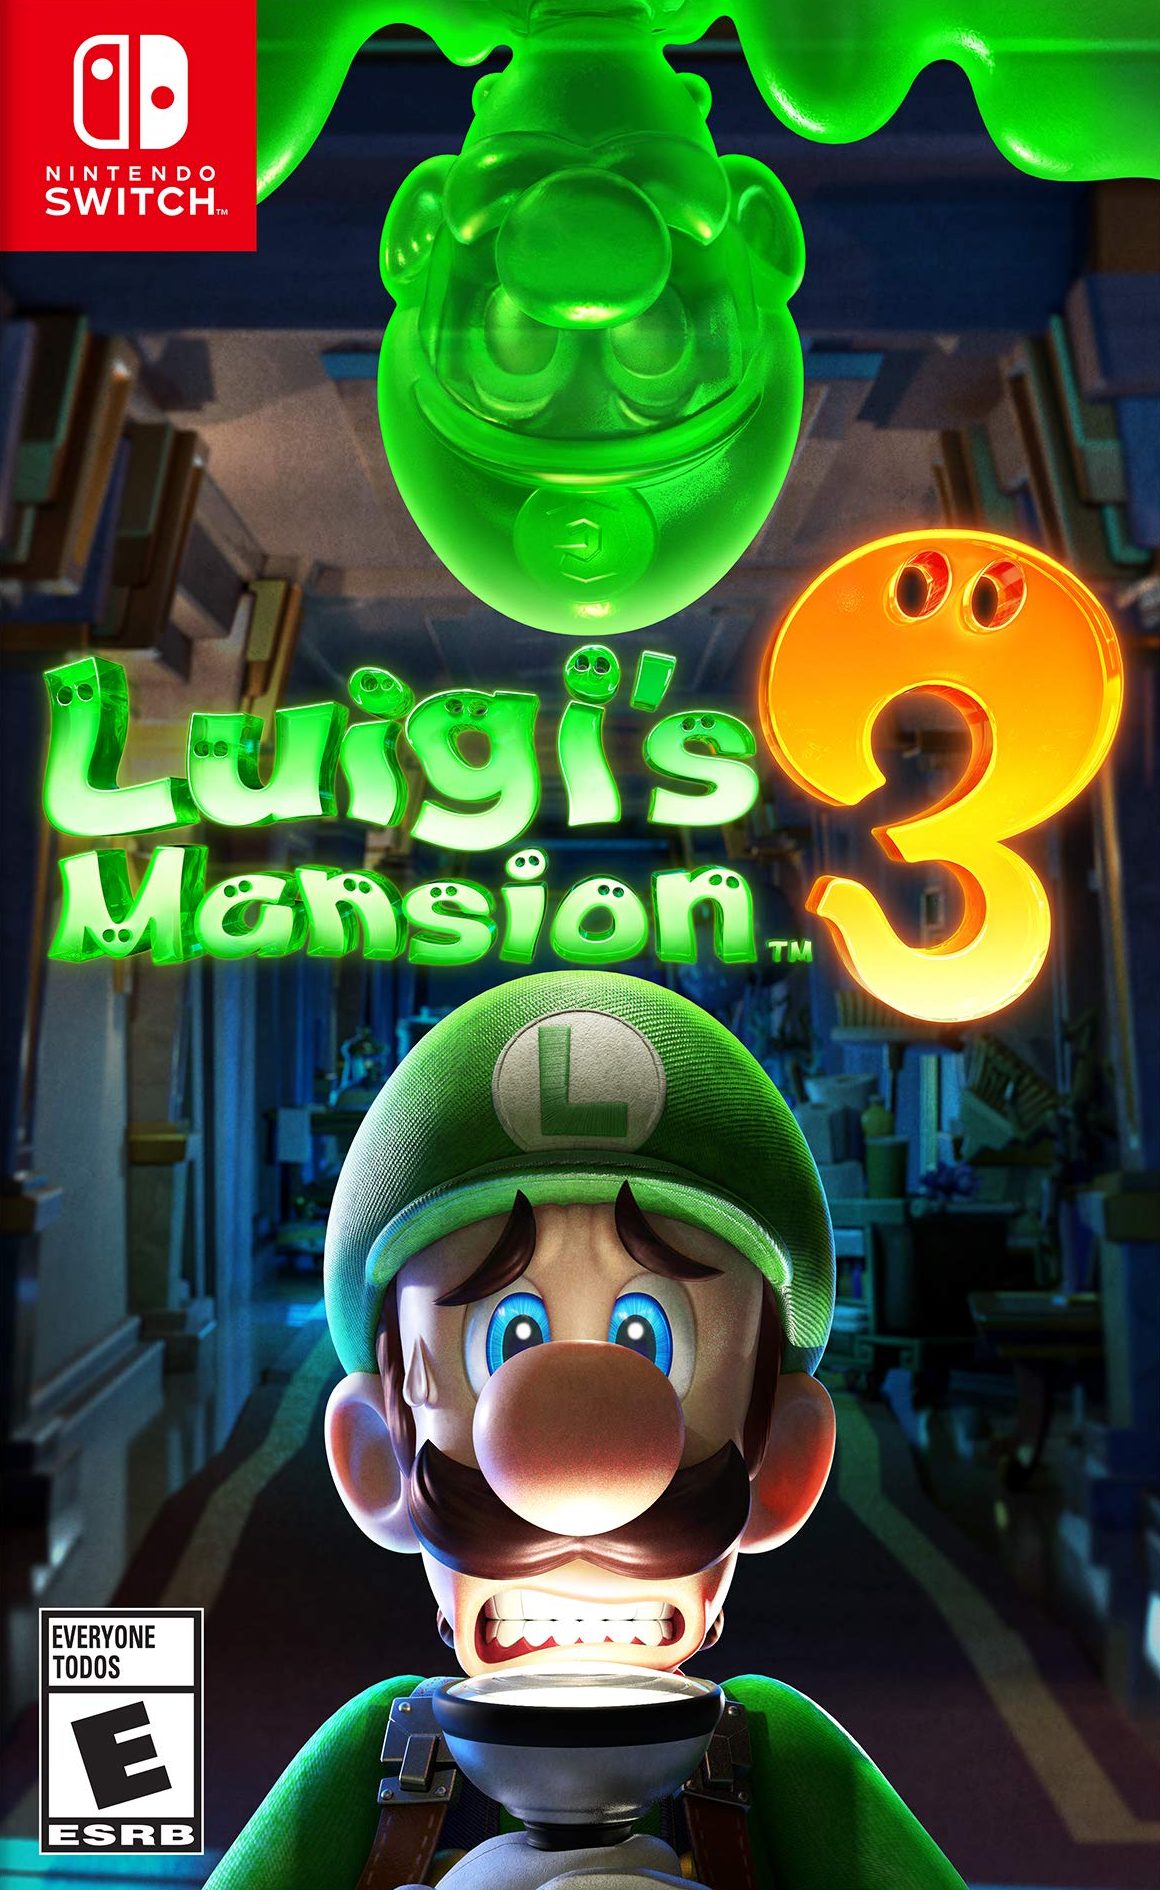 gamestop luigi's mansion 3 pre order bonus